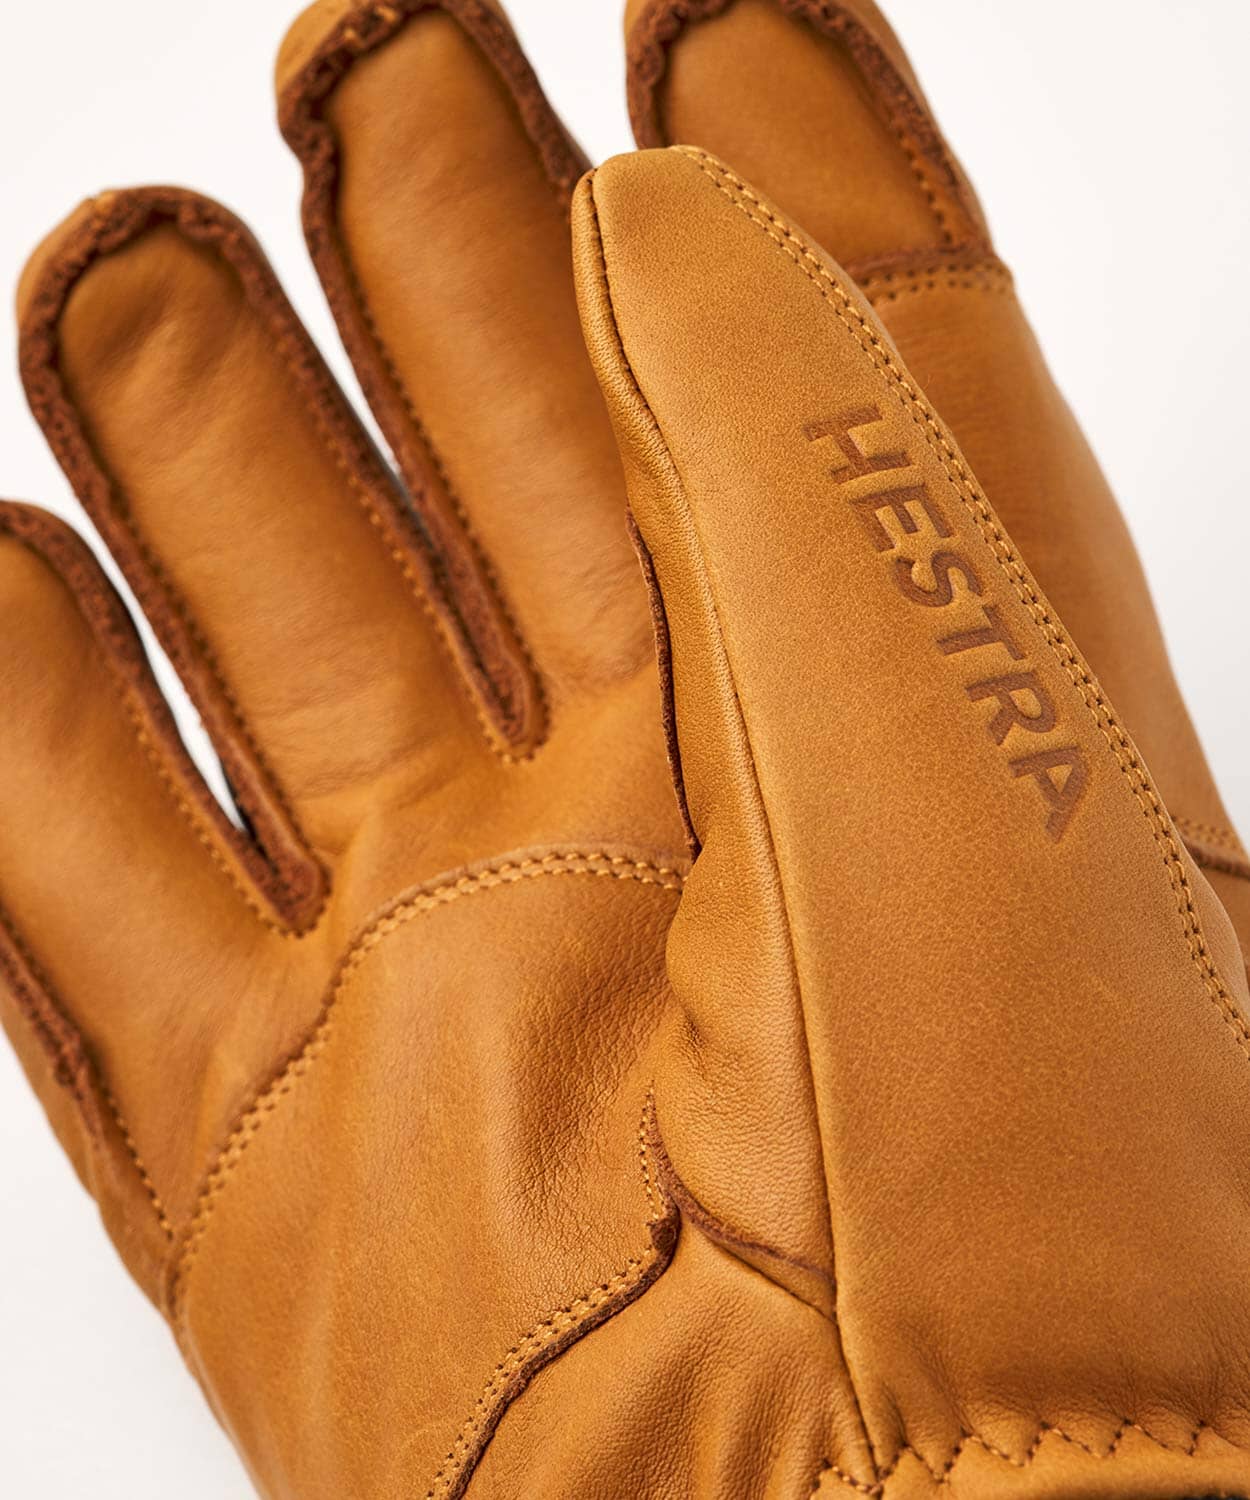 Leather Fall Line - 5 finger Gloves Hestra 